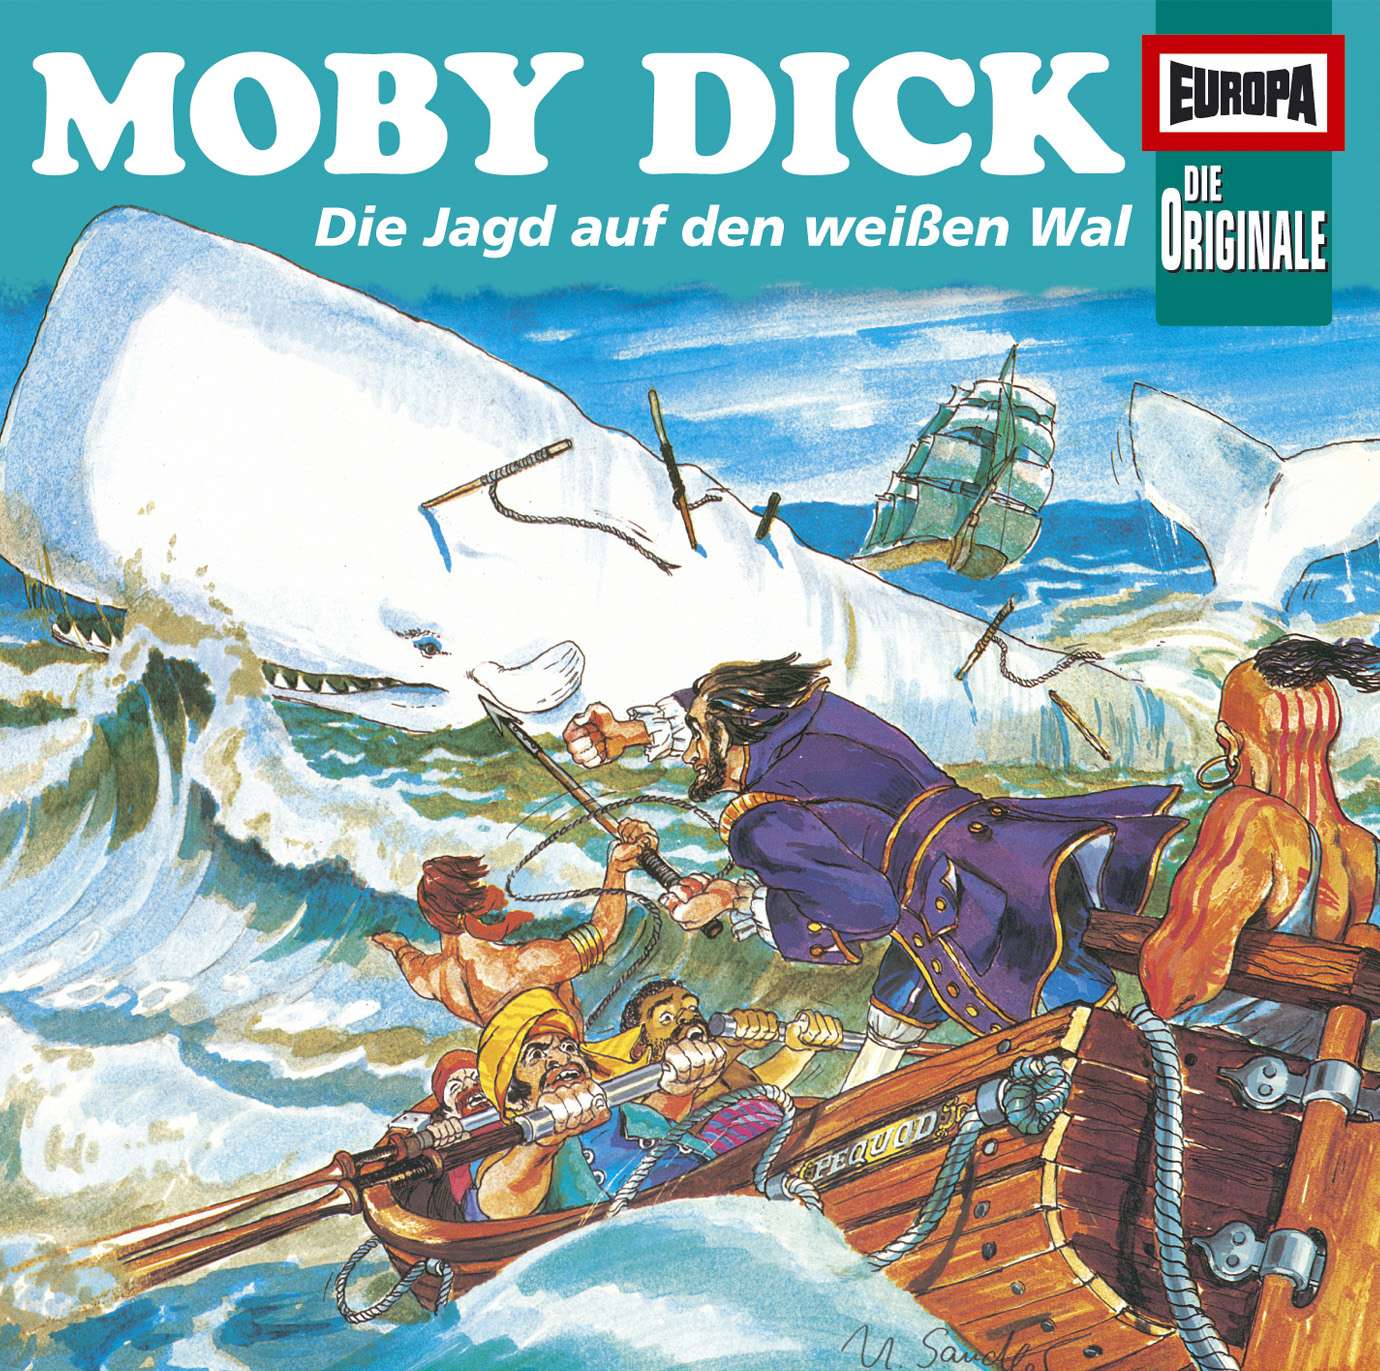  Die Originale: Moby Dick